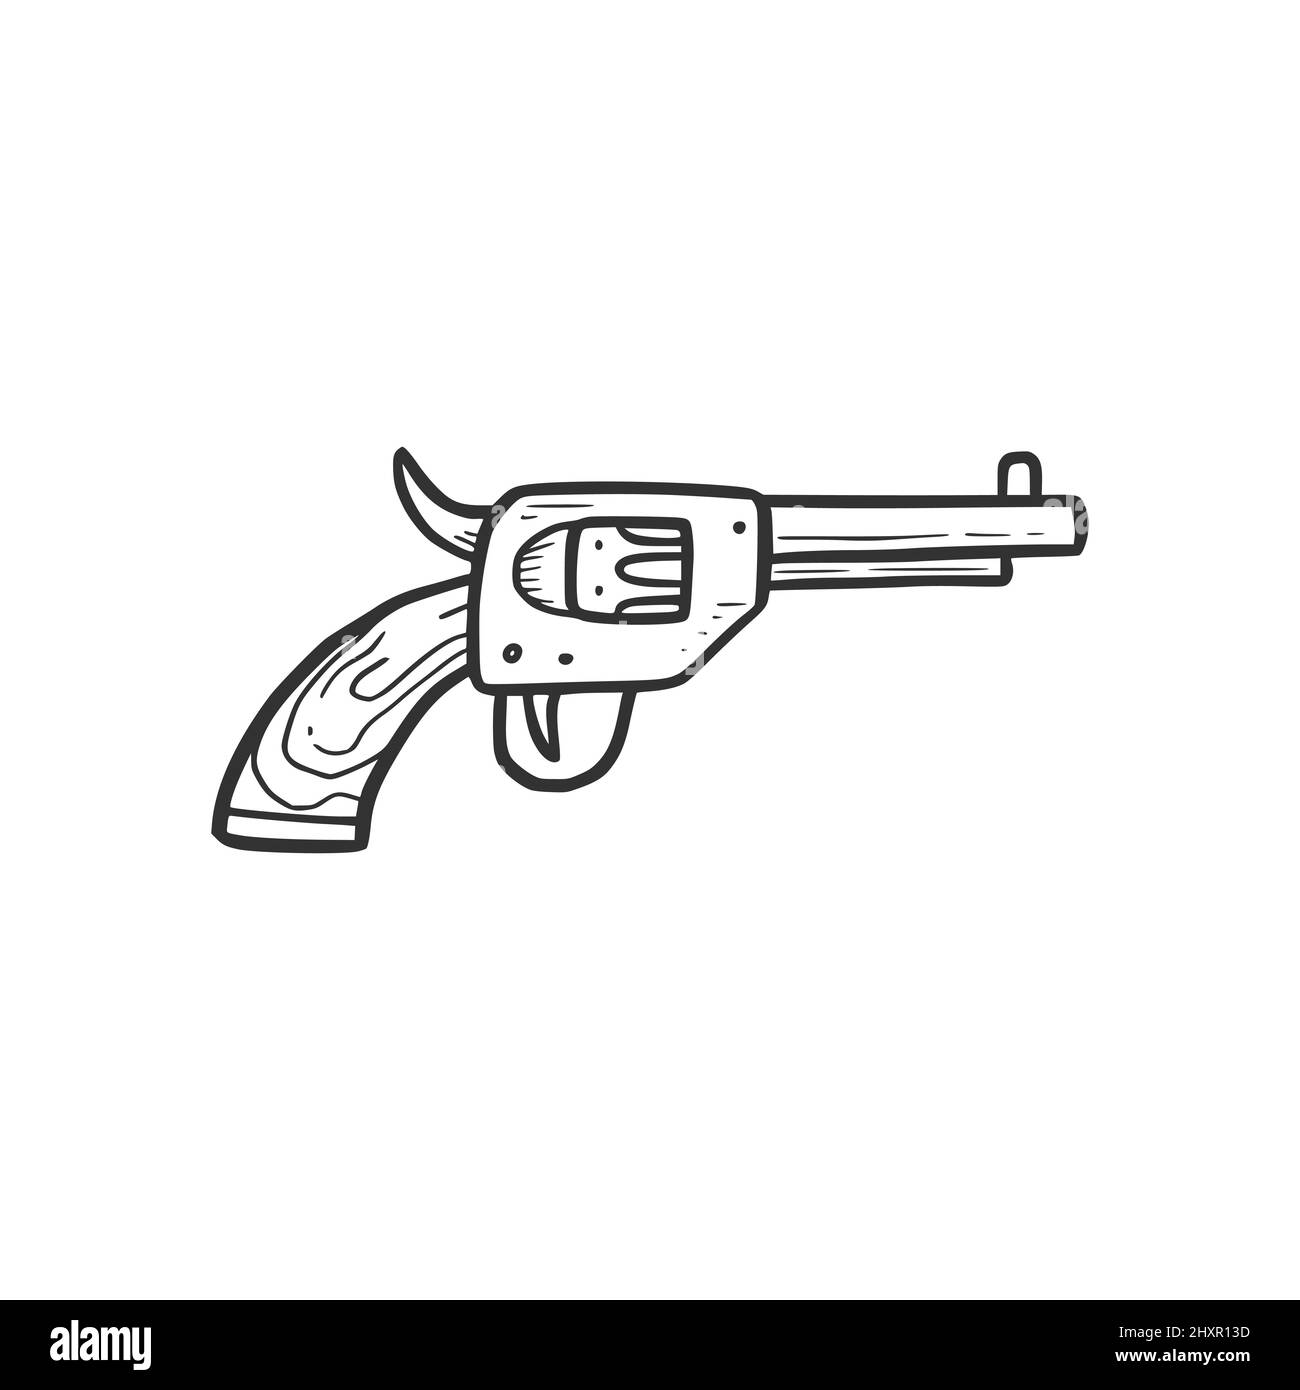 Handgezeichnetes Revolver-Pistolenelement. Comic-Doodle-Skizze. Cowboy, westliche Konzeptikone. Isolierte Vektordarstellung. Stock Vektor